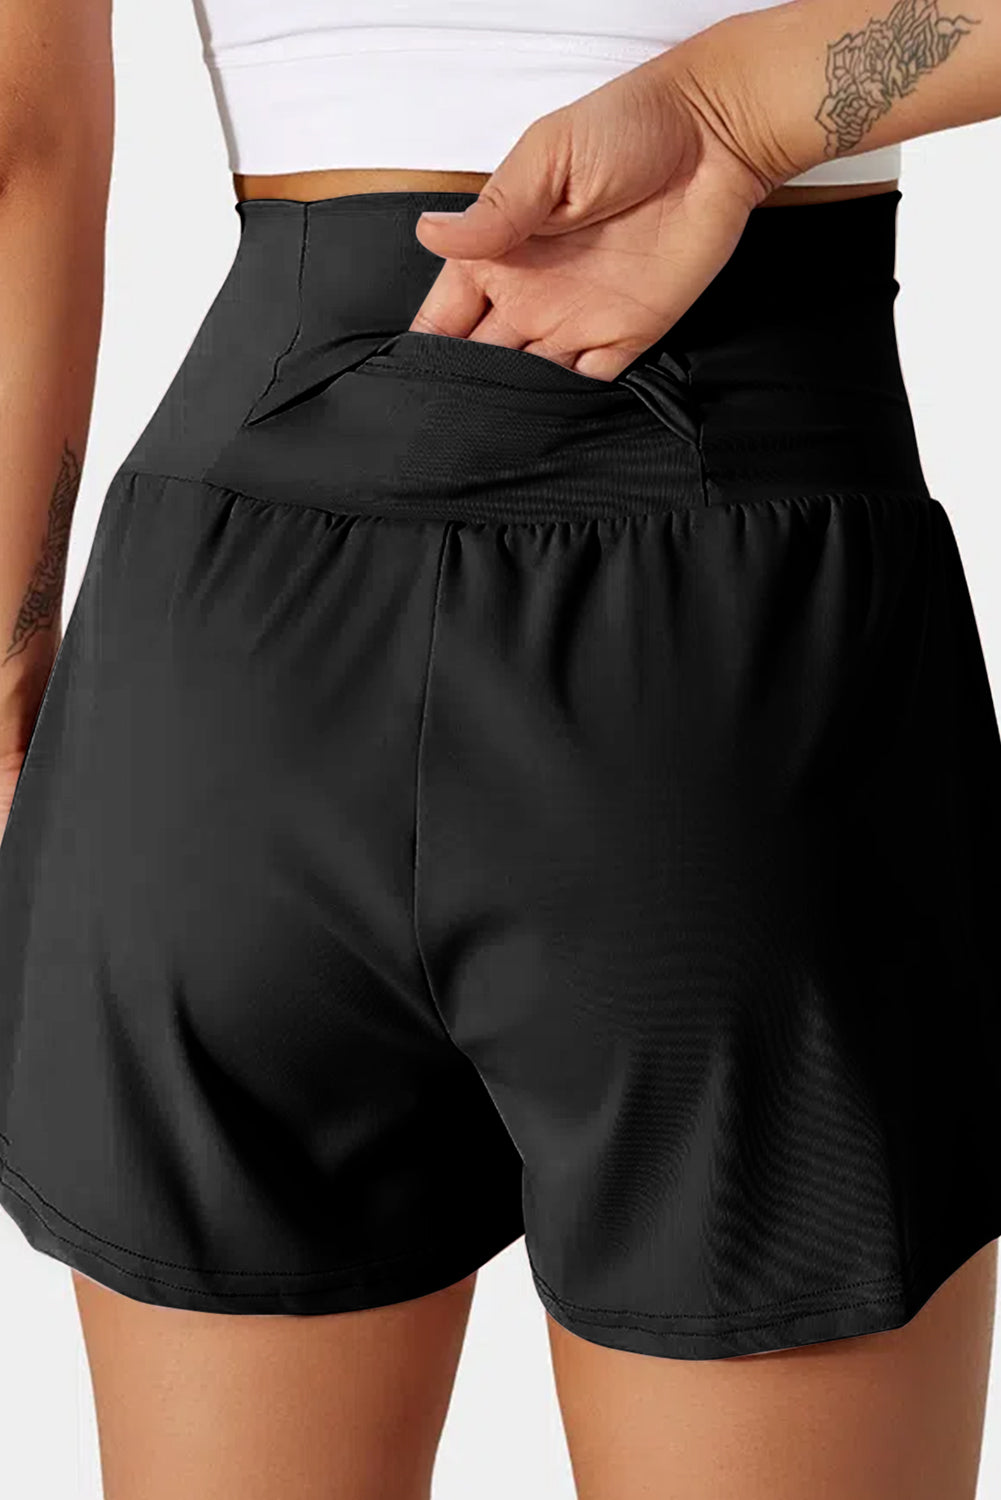 Crne kupaće hlače s džepovima i širokim pojasom